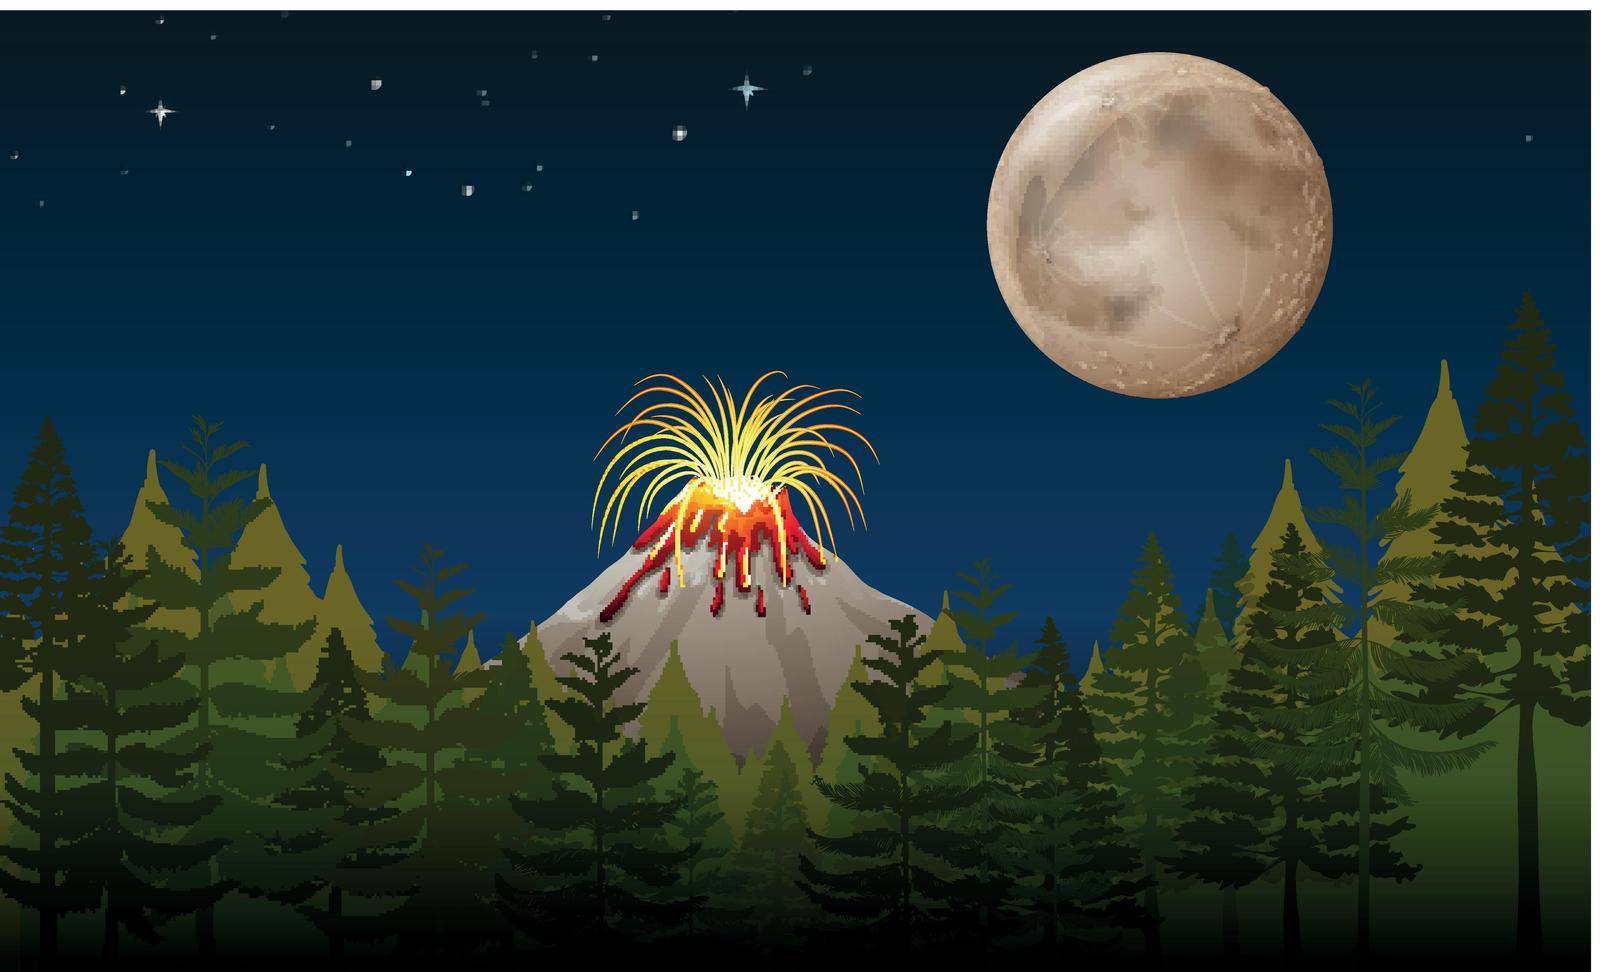 Volcano eruption at night illustration